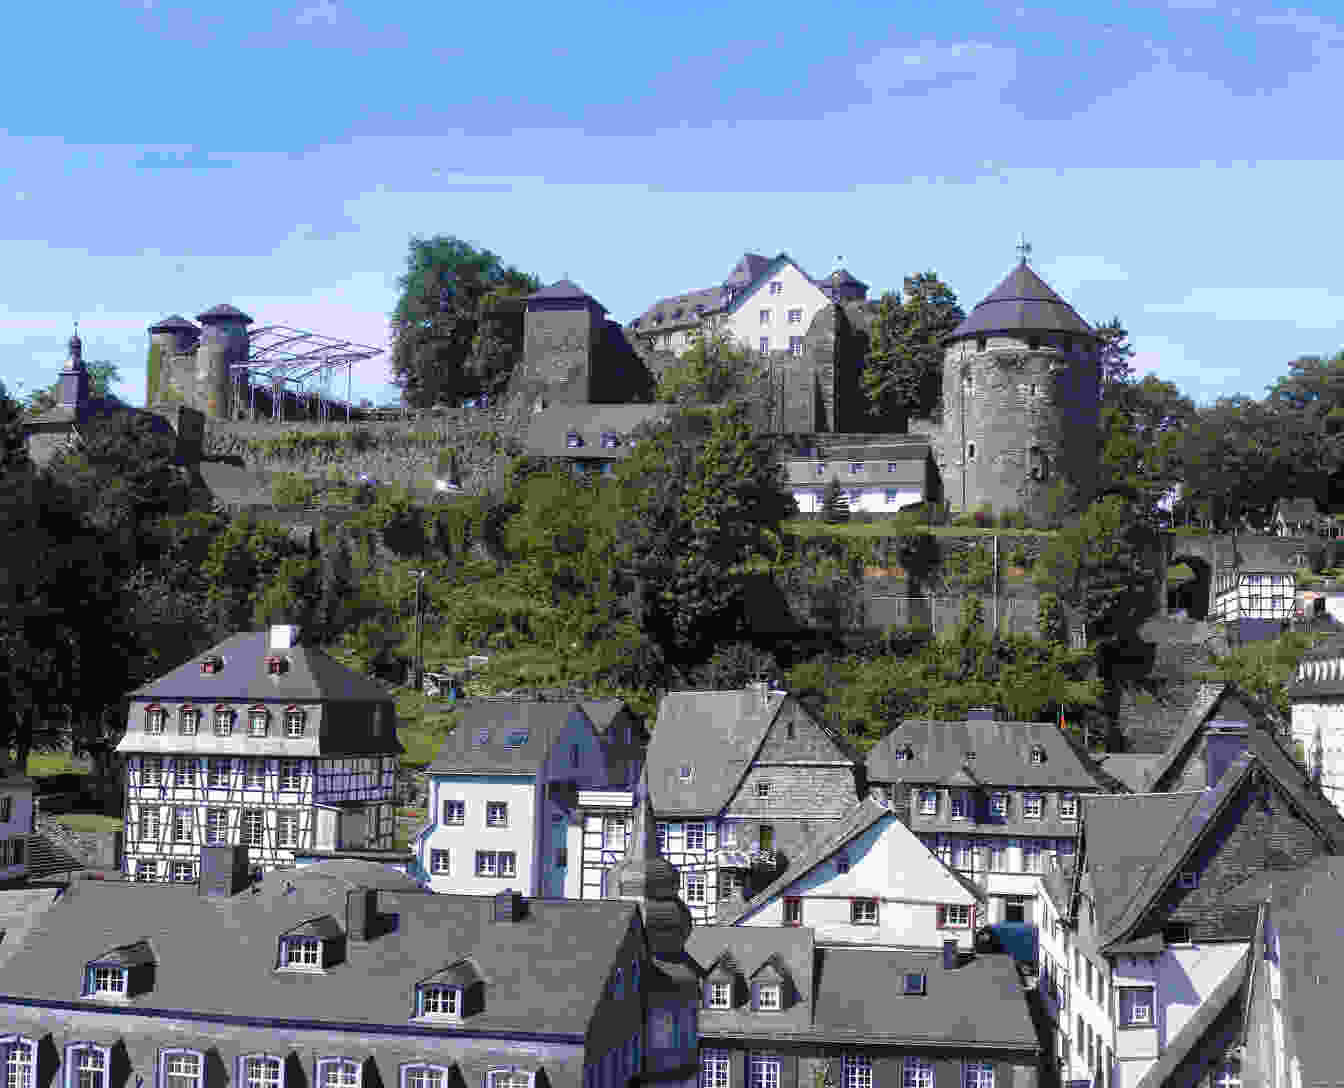 Bild der Stadt Monschau